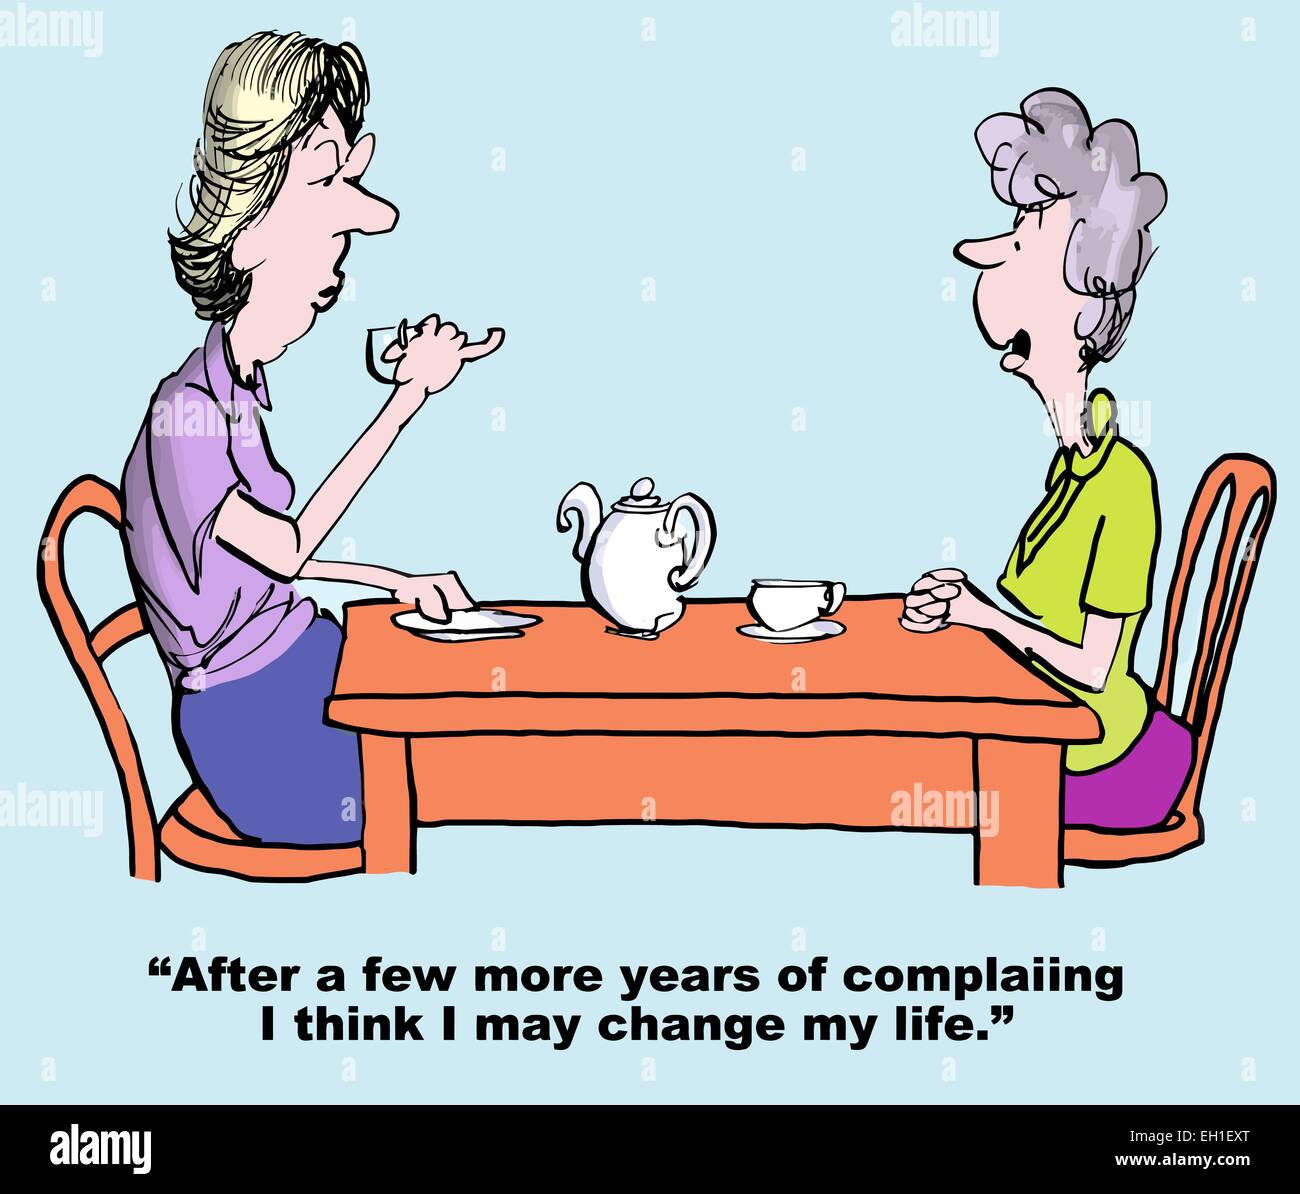 Cartoon di conversazione tra due donne, uno dice "Dopo un paio di anni di lamentarsi, penso che potrebbe cambiare la mia vita". Illustrazione Vettoriale